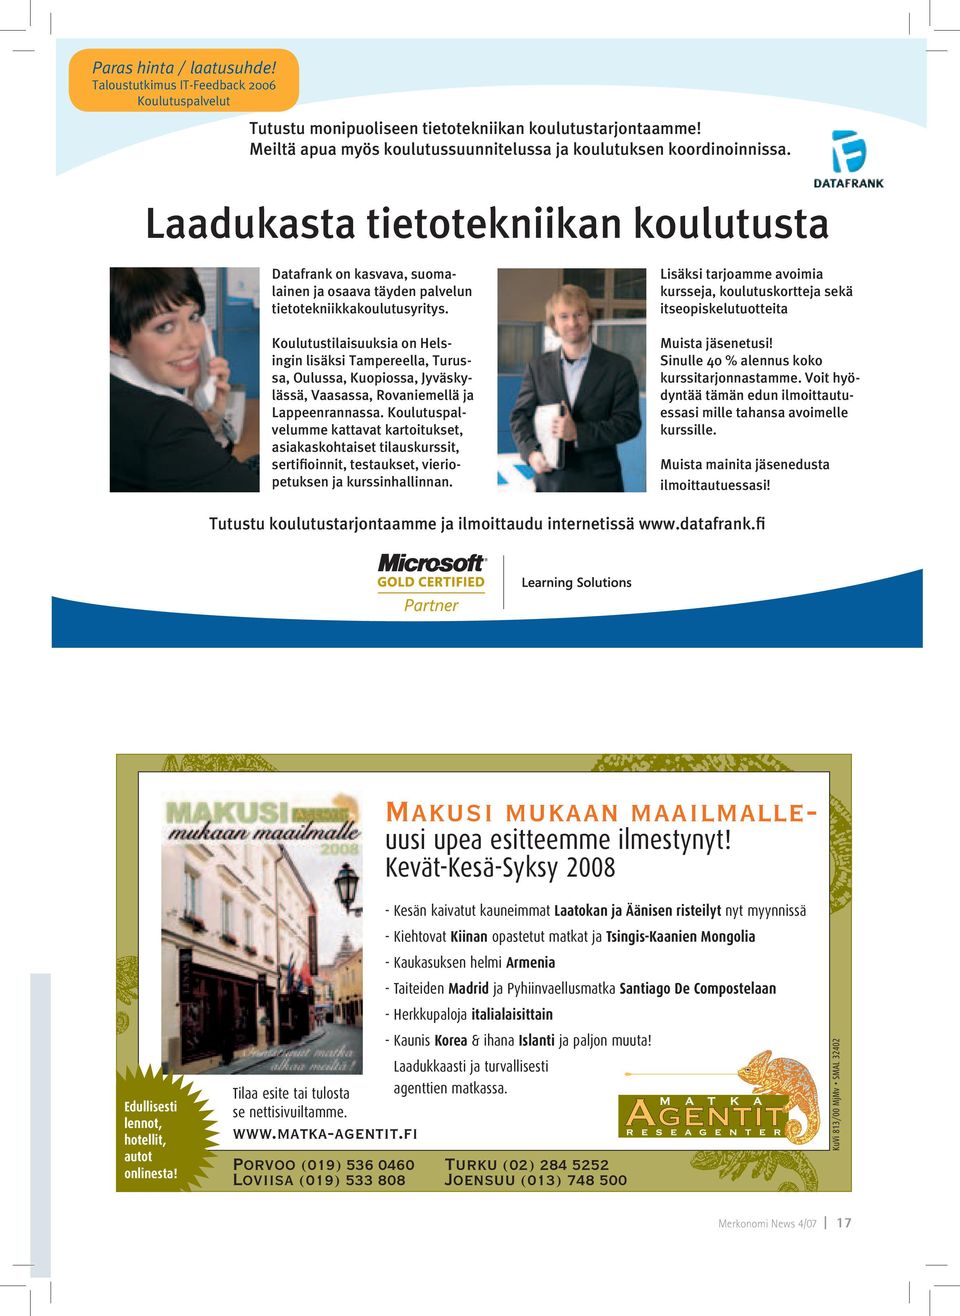 Koulutustilaisuuksia on Helsingin lisäksi Tampereella, Turussa, Oulussa, Kuopiossa, Jyväskylässä, Vaasassa, Rovaniemellä ja Lappeenrannassa.